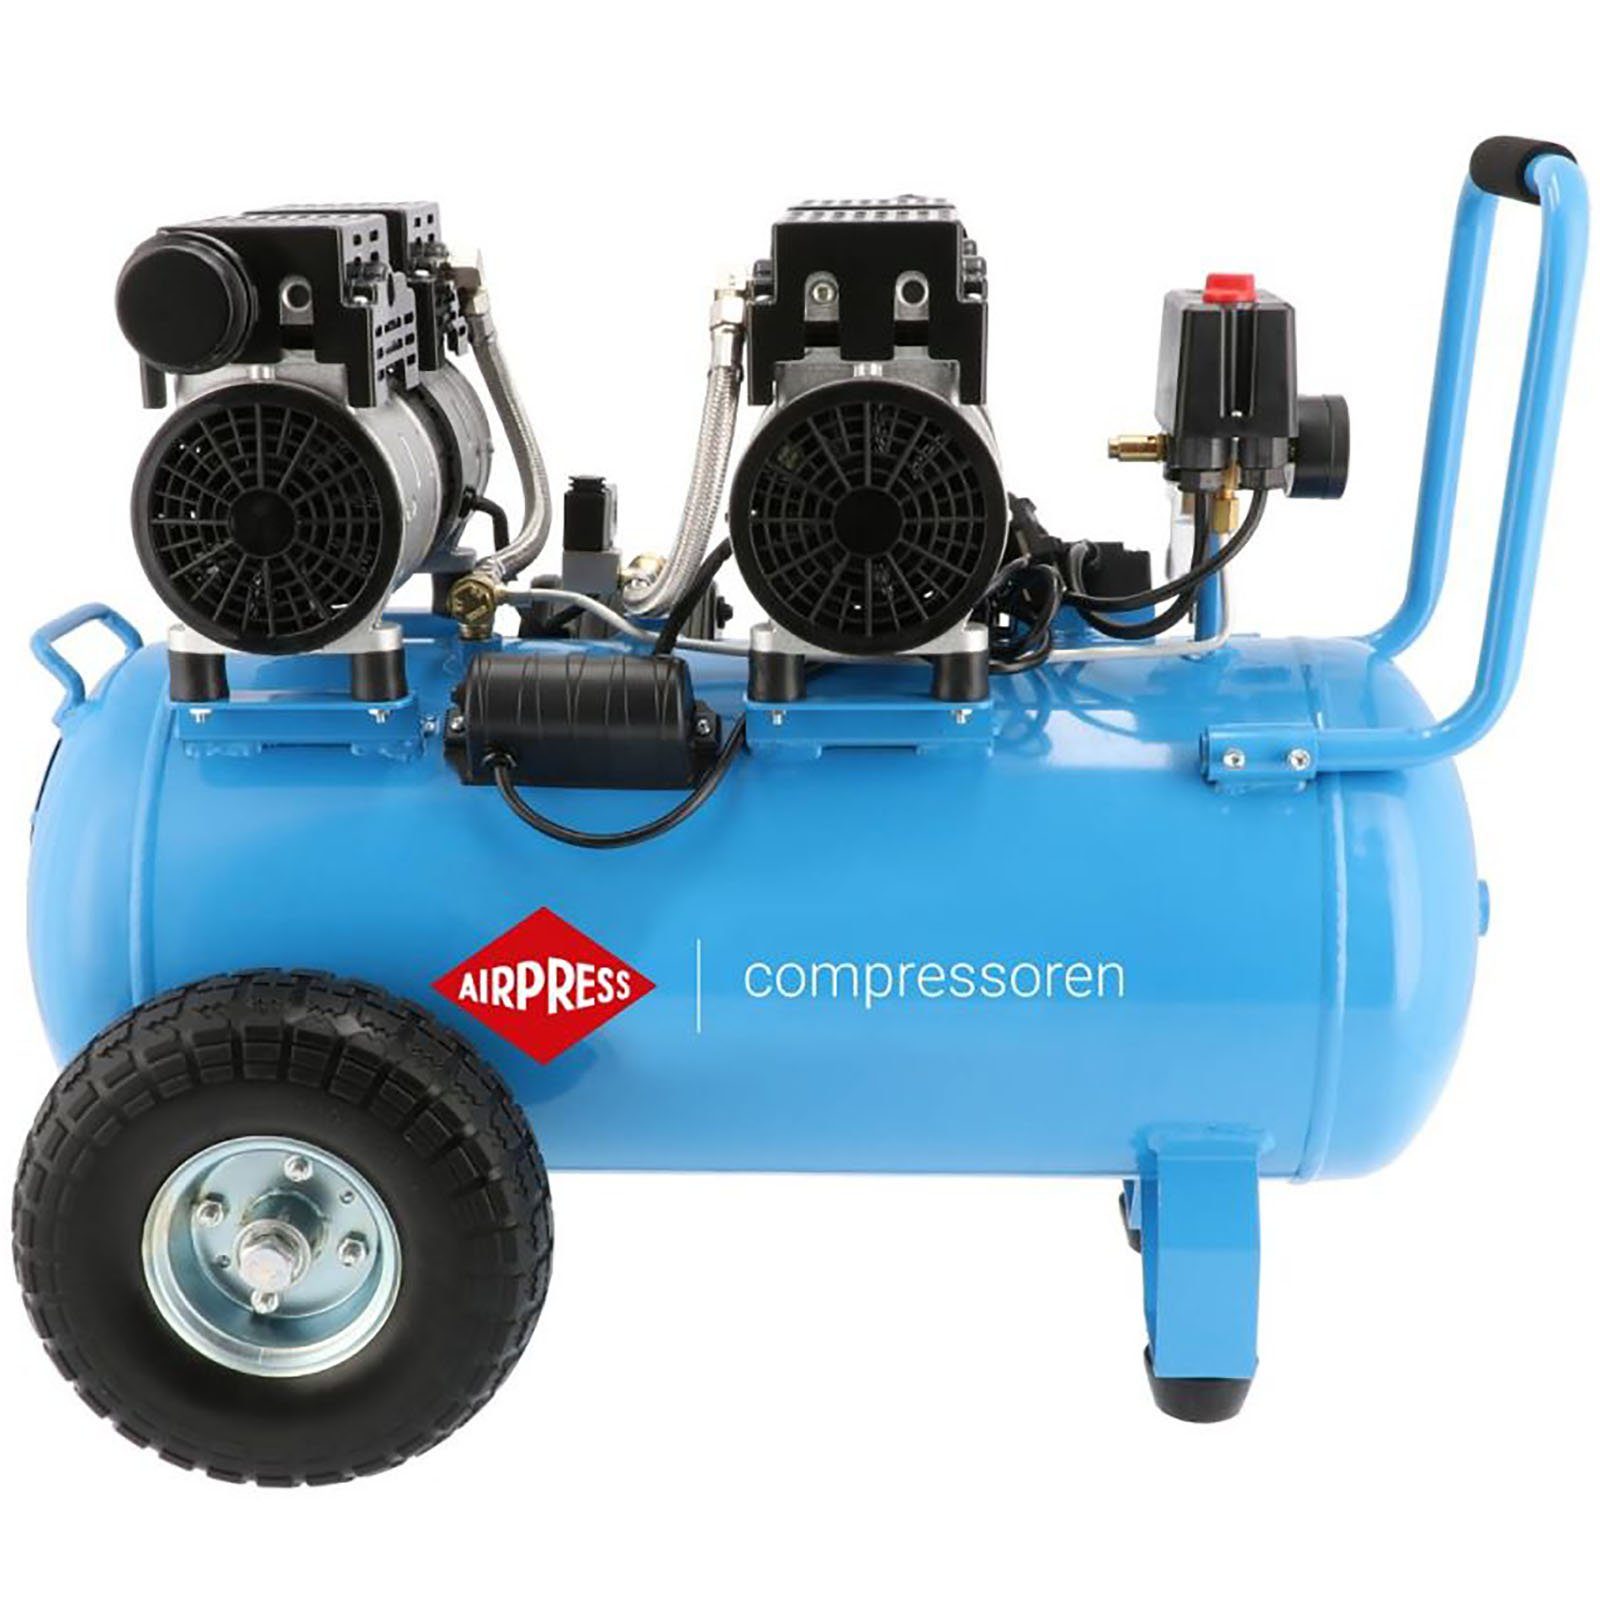 Airpress Kompressor Airpress® Flüster Kompressor 2 PS 50 Liter LMO 50-270 8bar Typ 36504, max. 8 bar, 50 l, 1 Stück